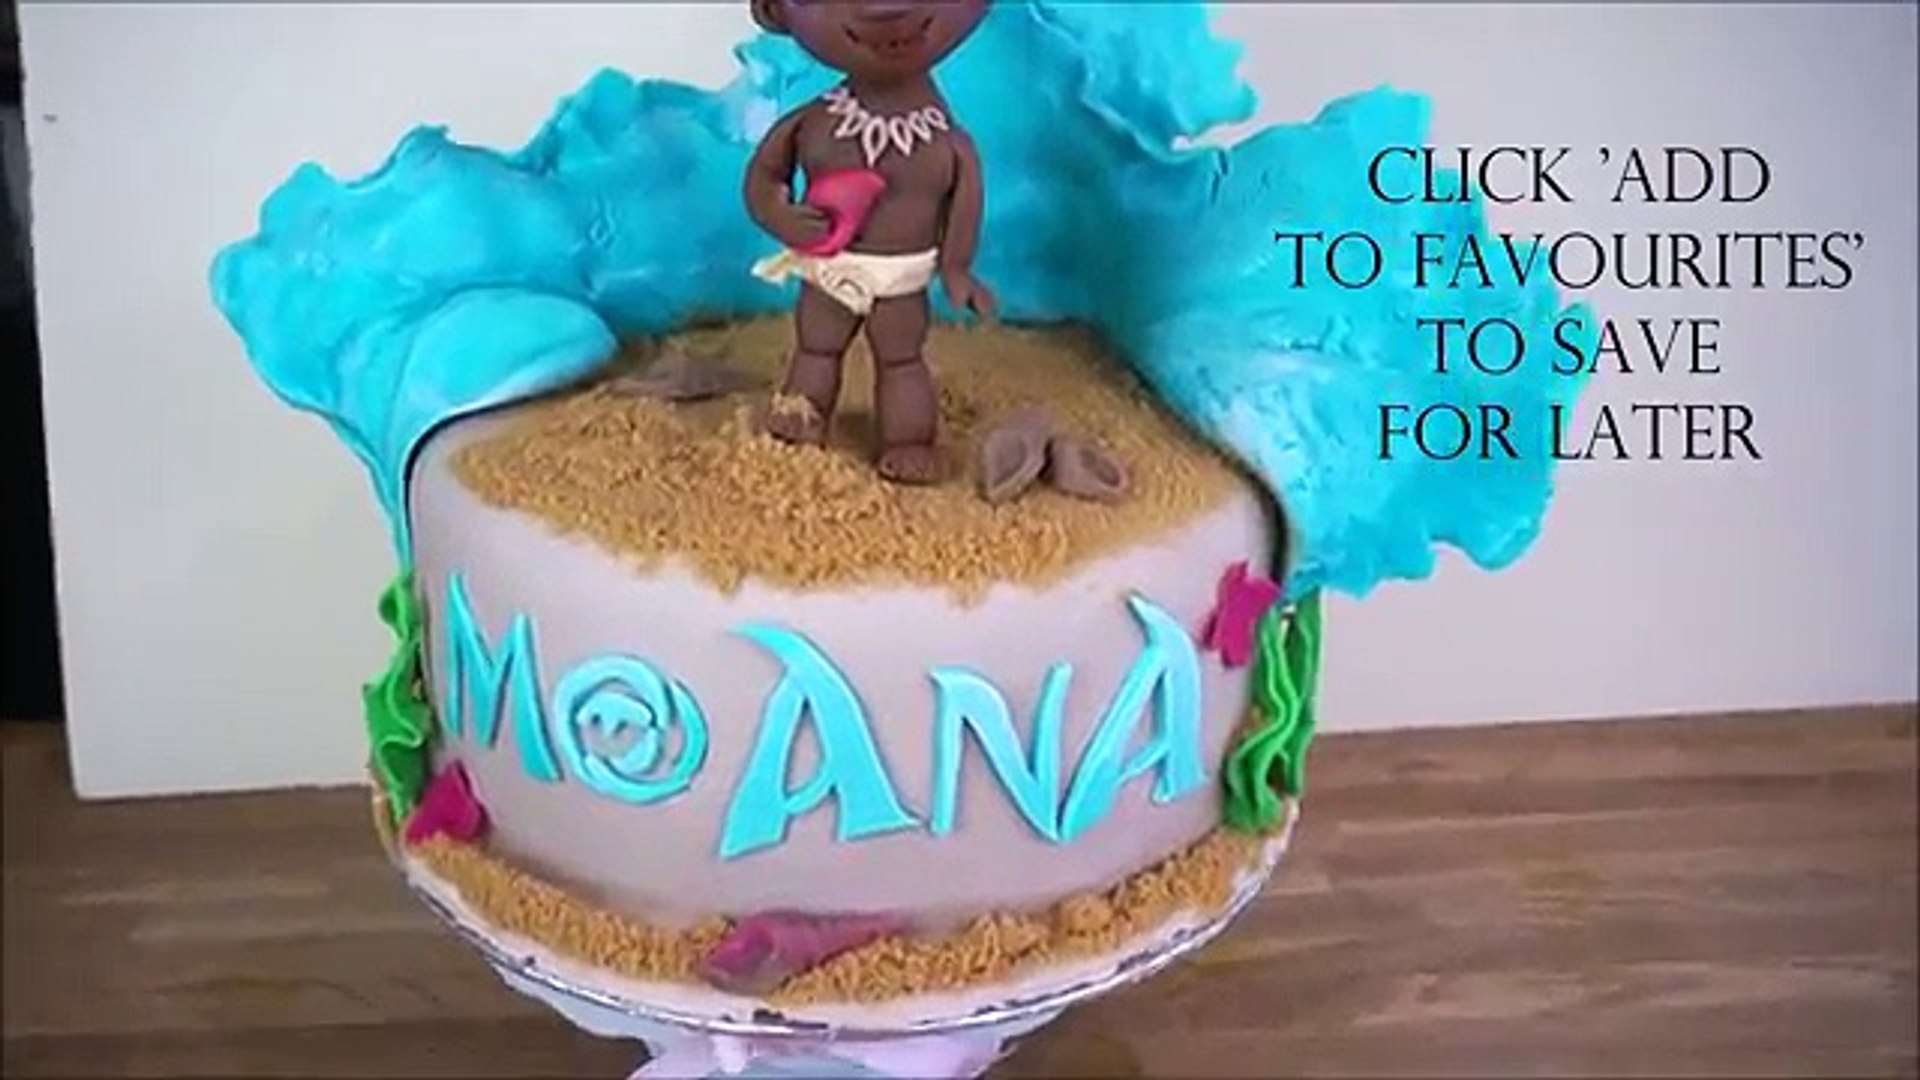 Baby Moana Cake Moana Cake Princess Moana Cake Disney Moana Themed Cake Video Dailymotion